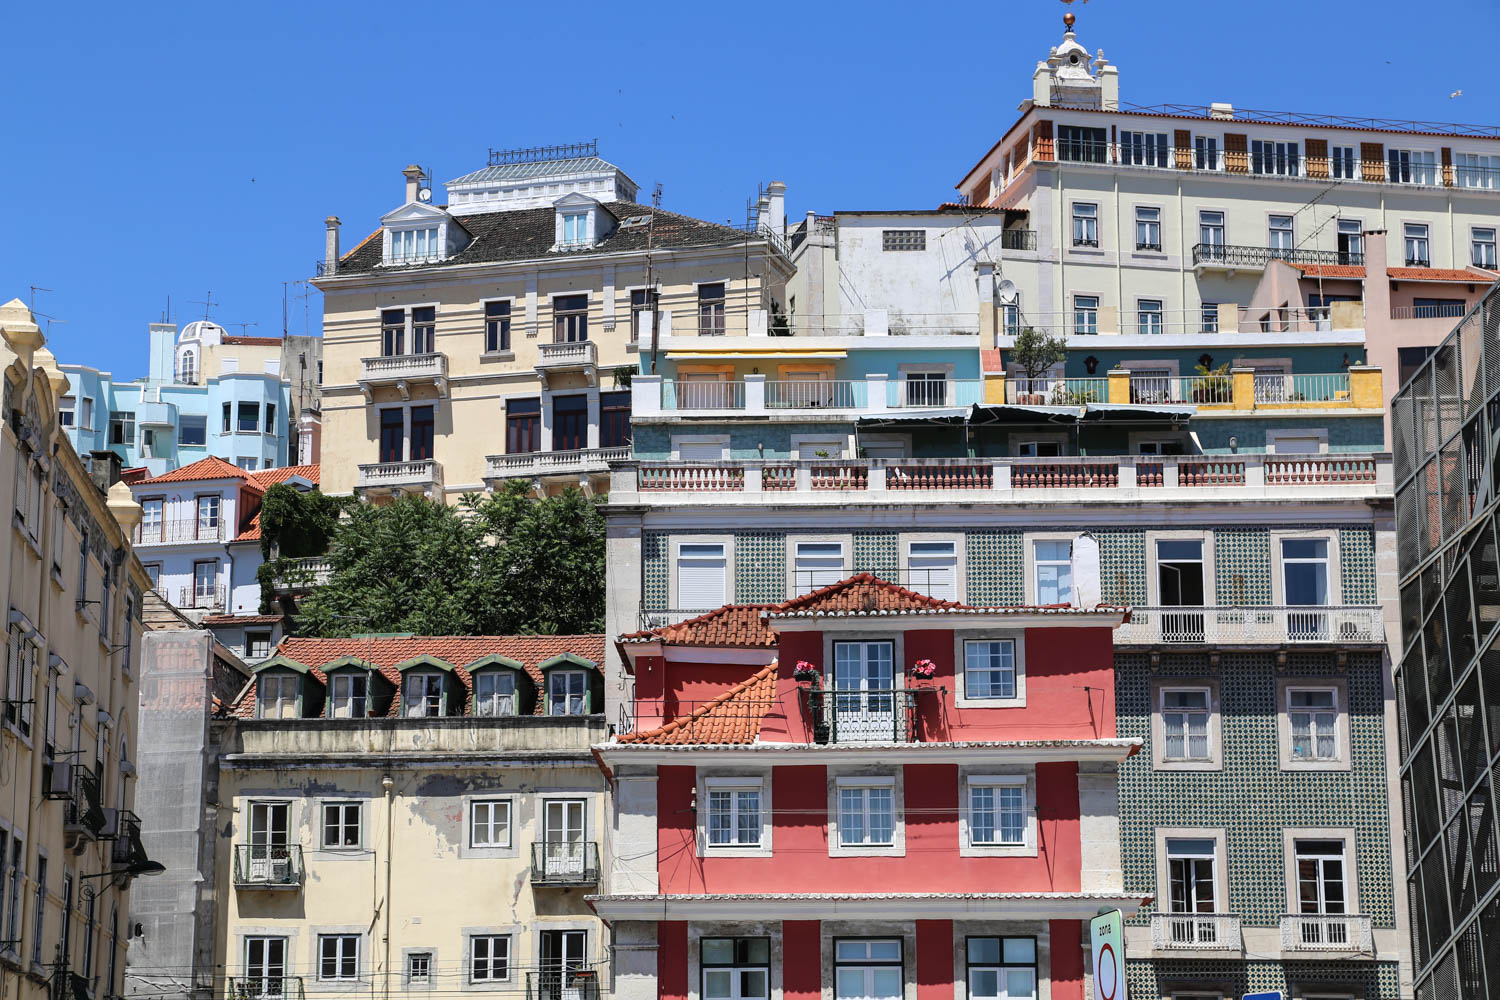 Lissabonin täydellinen Airbnb-koti